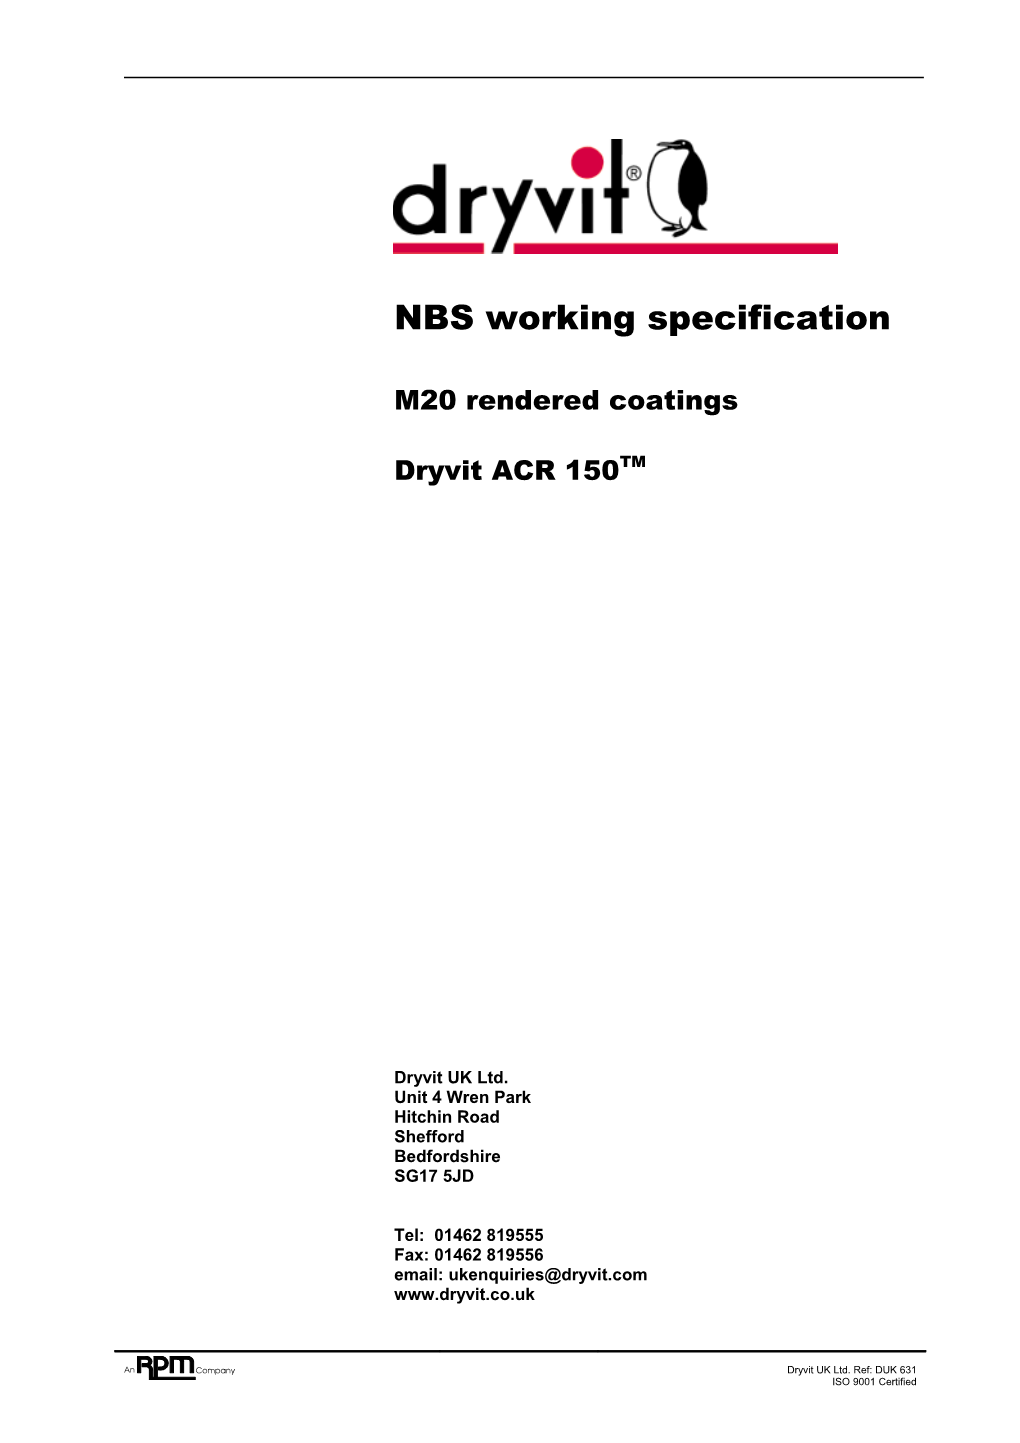 Dryvit UK Ltd - Dryvit ACR 150 Working Specification DUK631